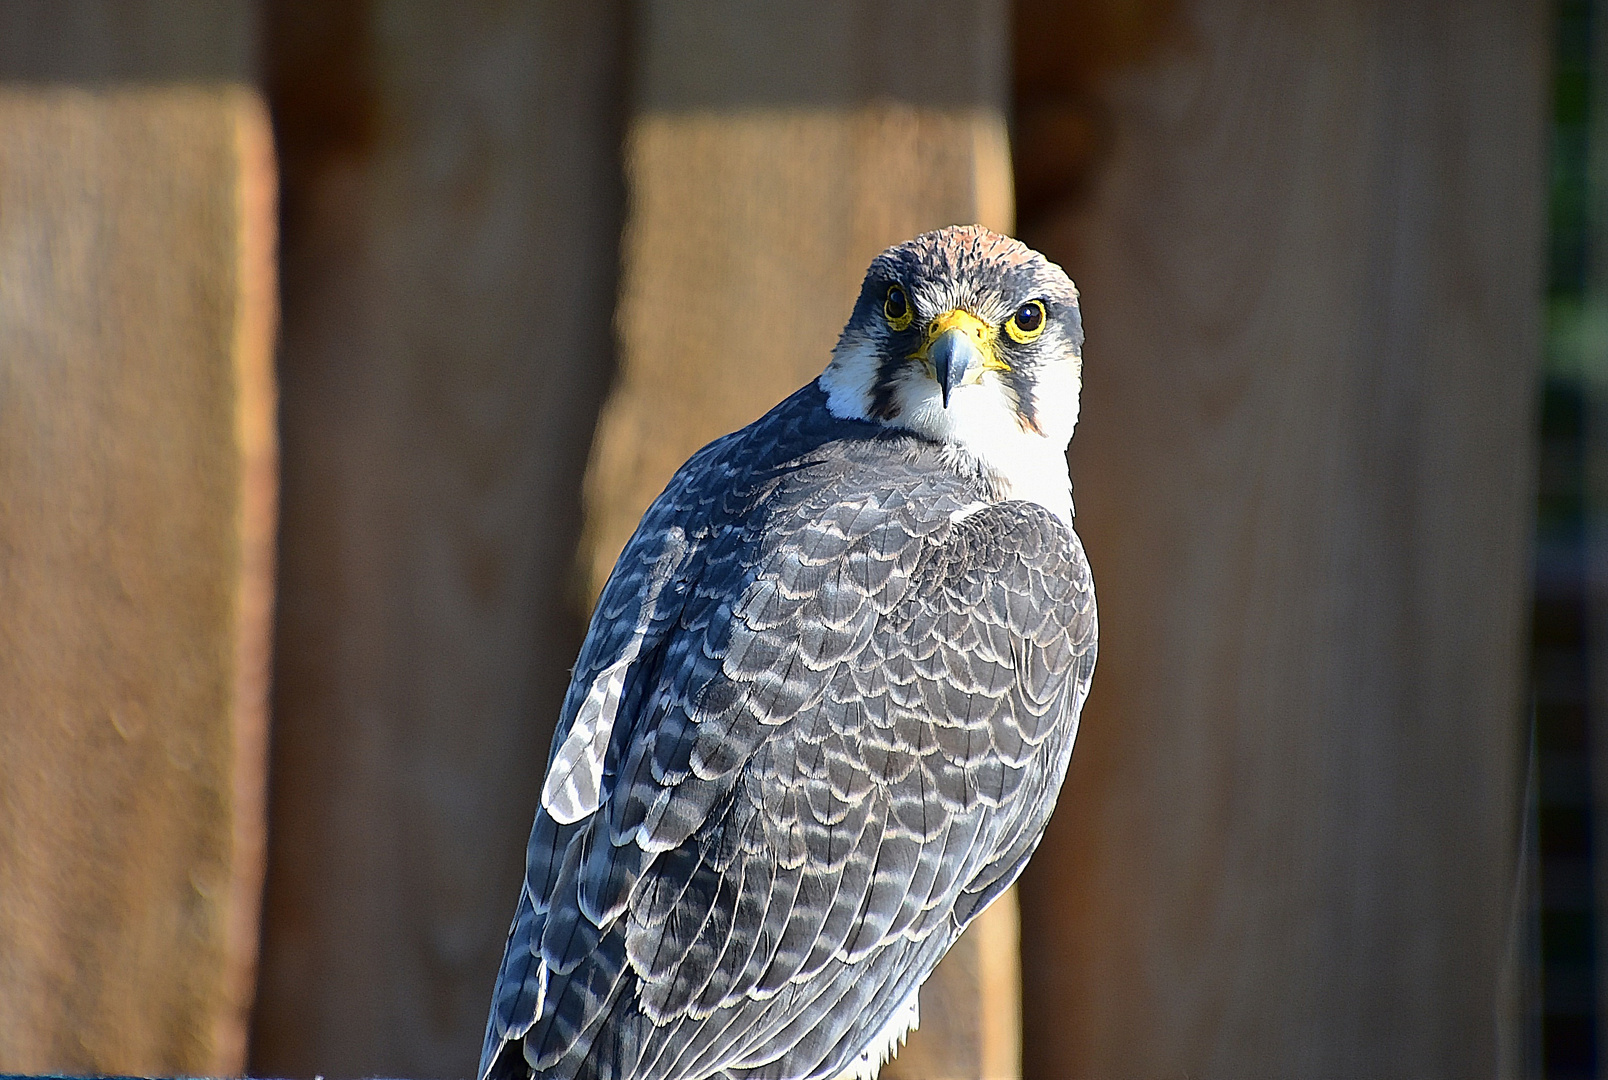 Lannerfalke (Falco biarmicus)